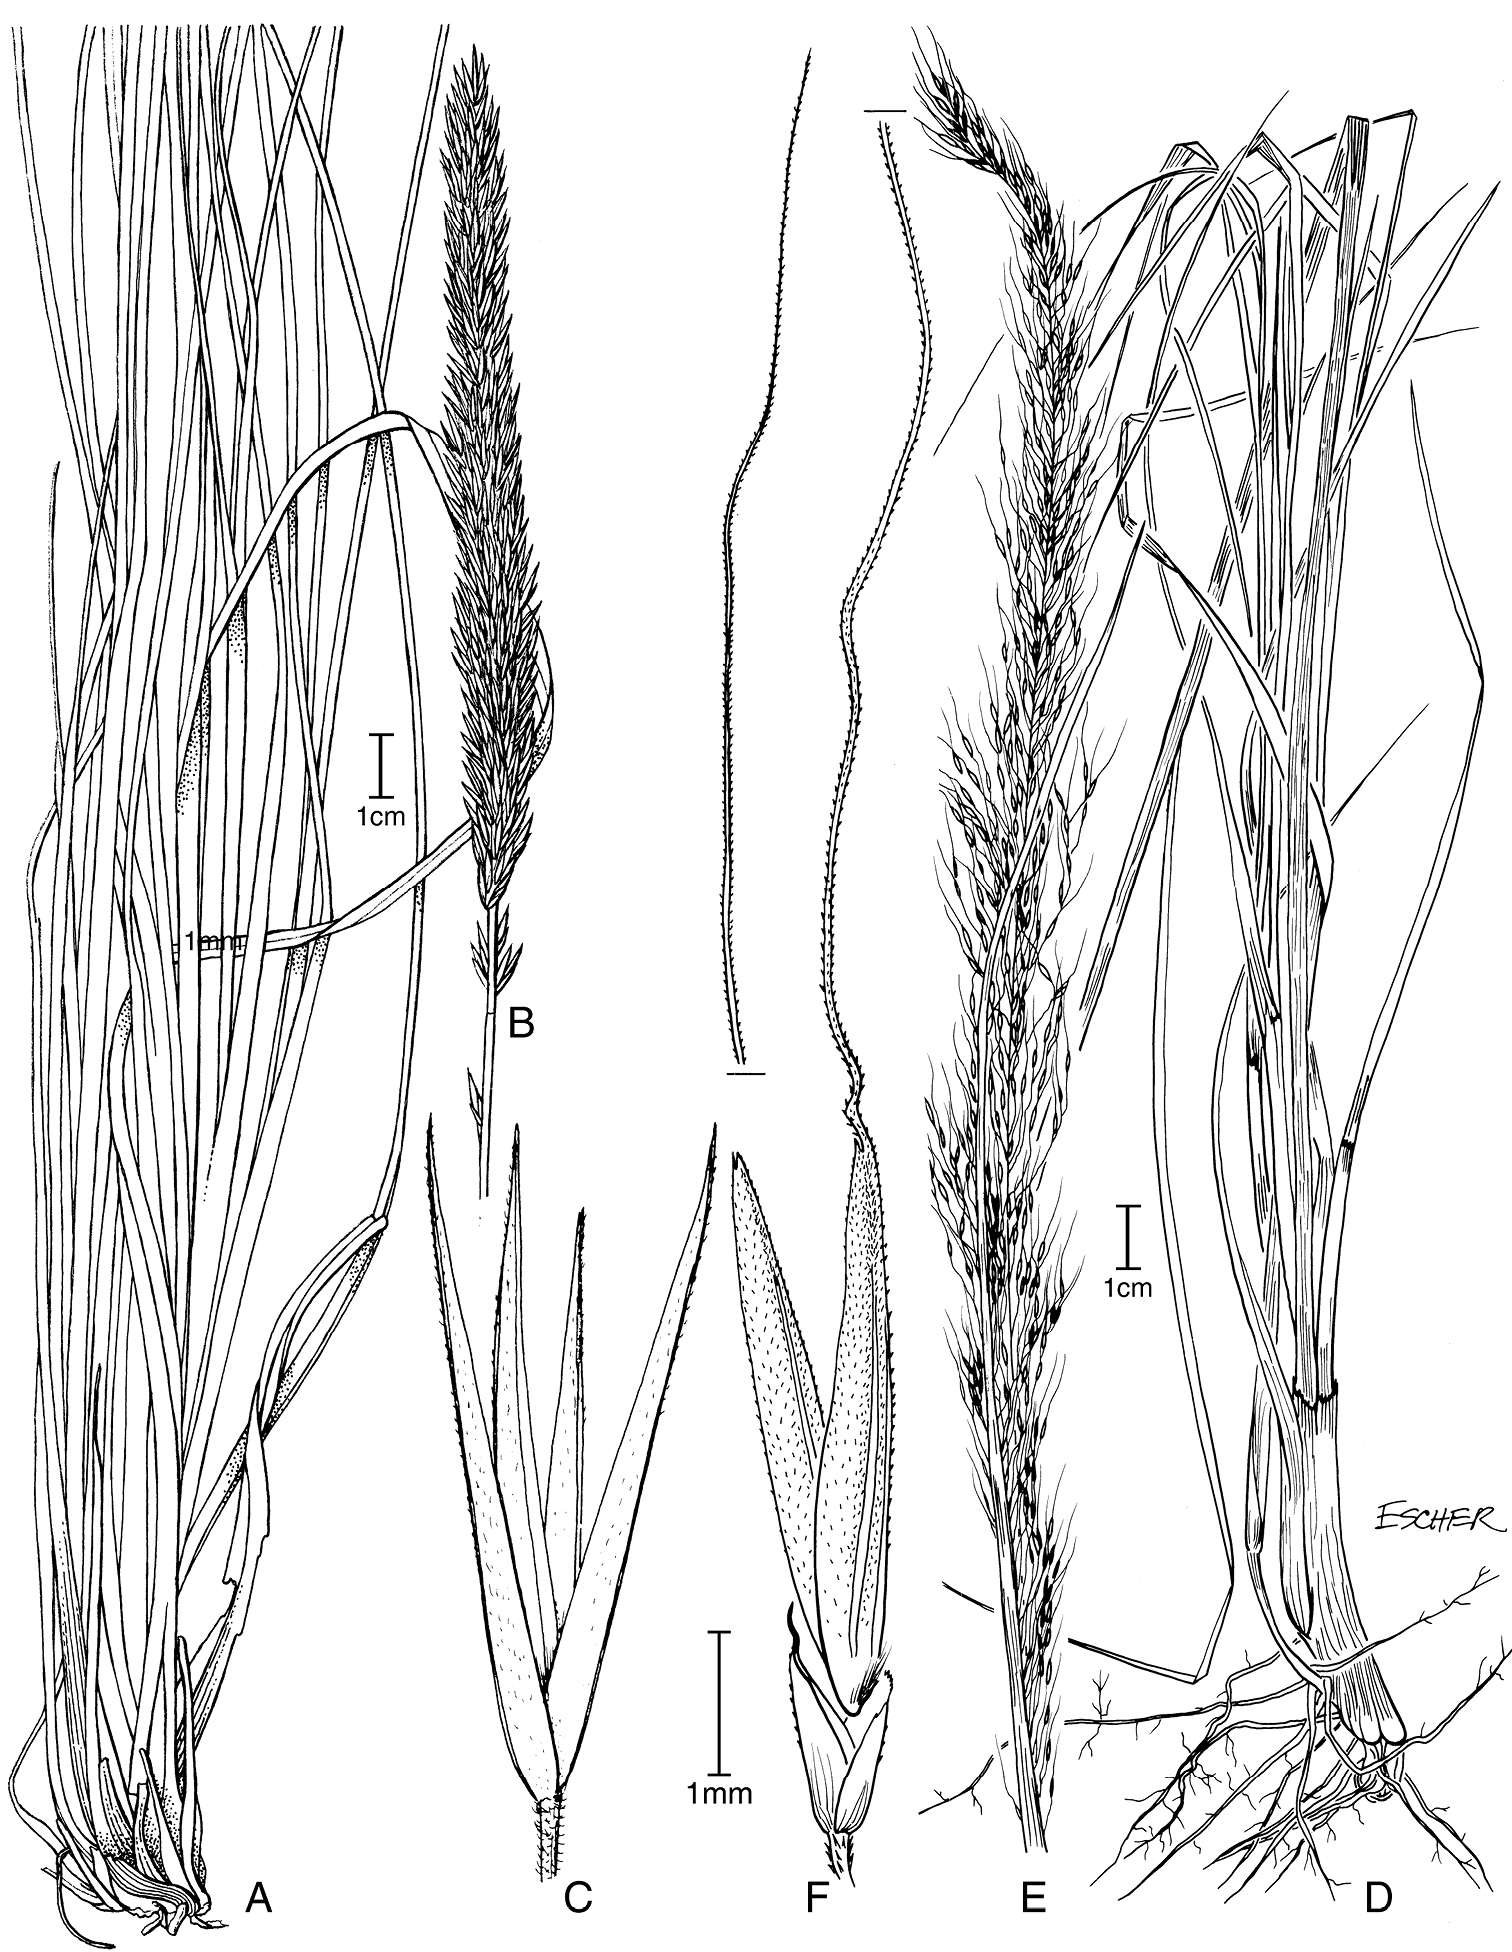 Plancia ëd Muhlenbergia rigida (Kunth) Kunth